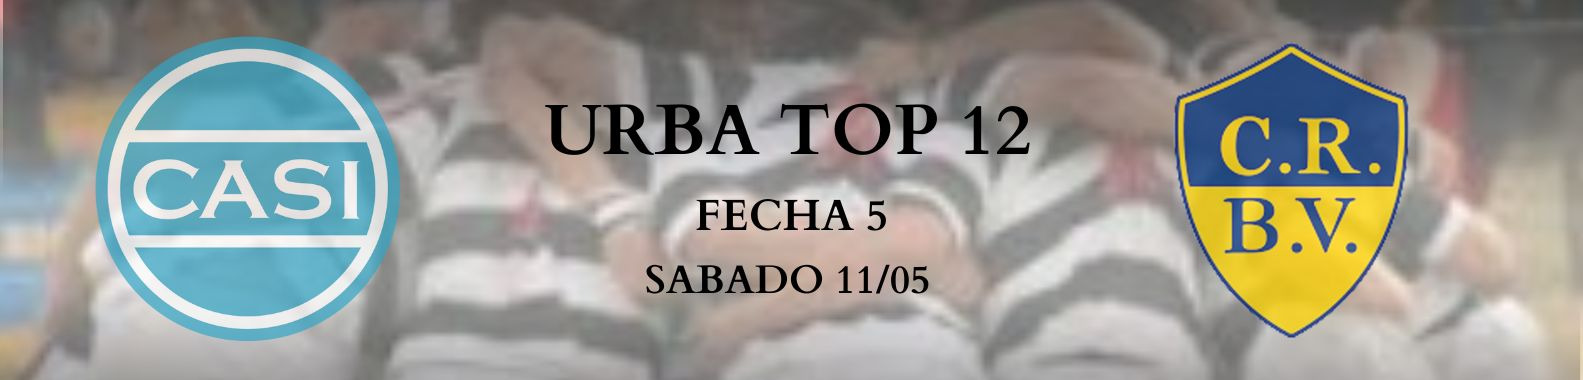 URBA TOP 12 - Fecha 5 - CASI vs CRBV